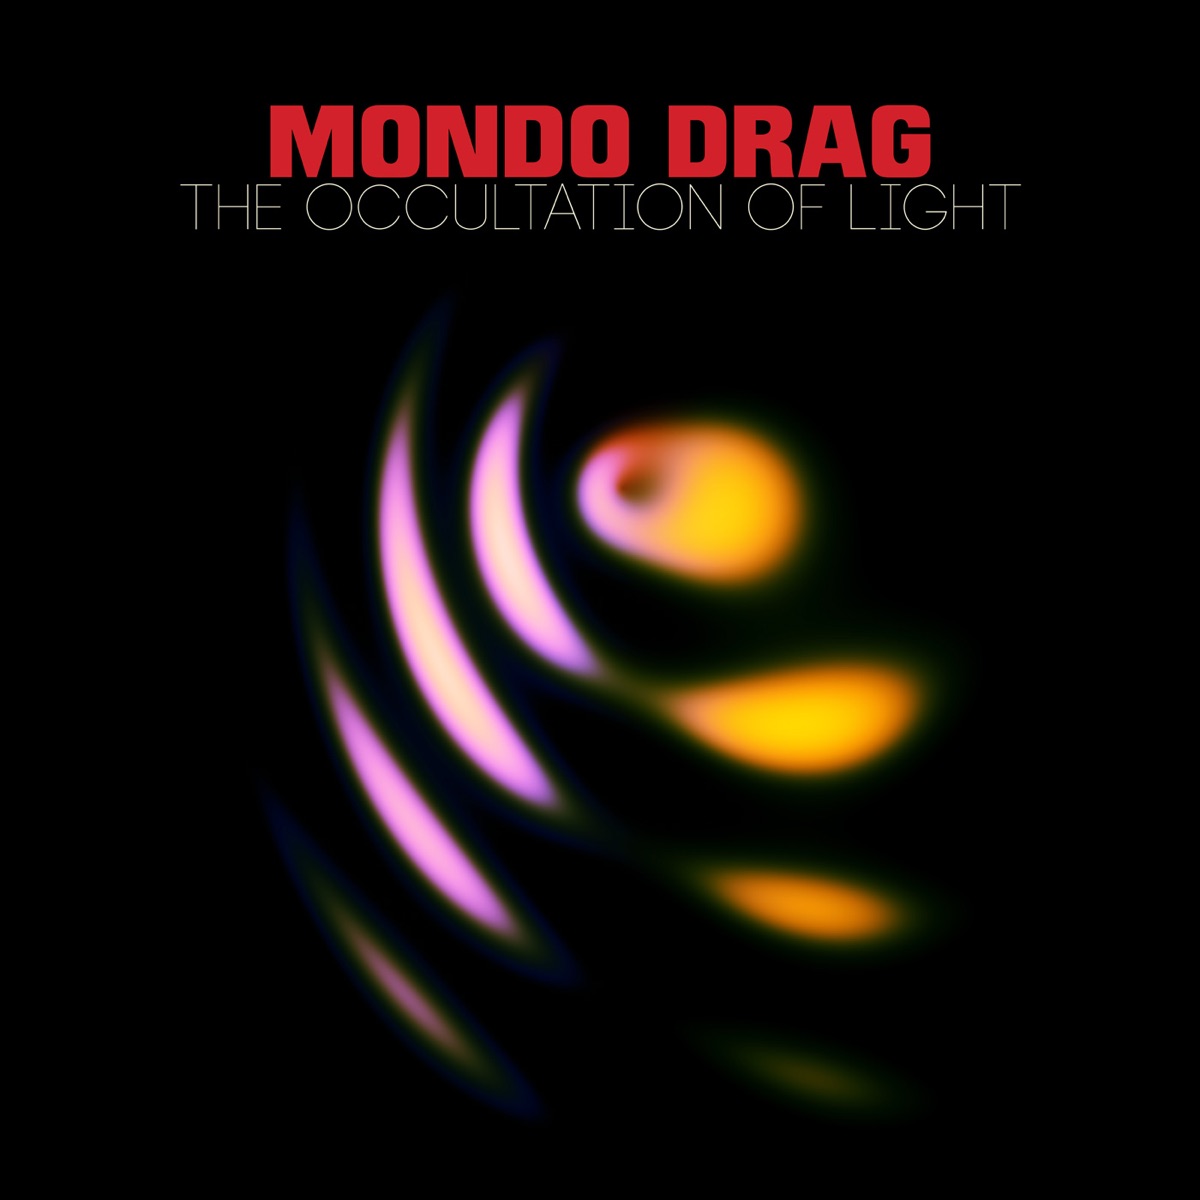 The Occultation of Light - Album by Mondo Drag - Apple Music